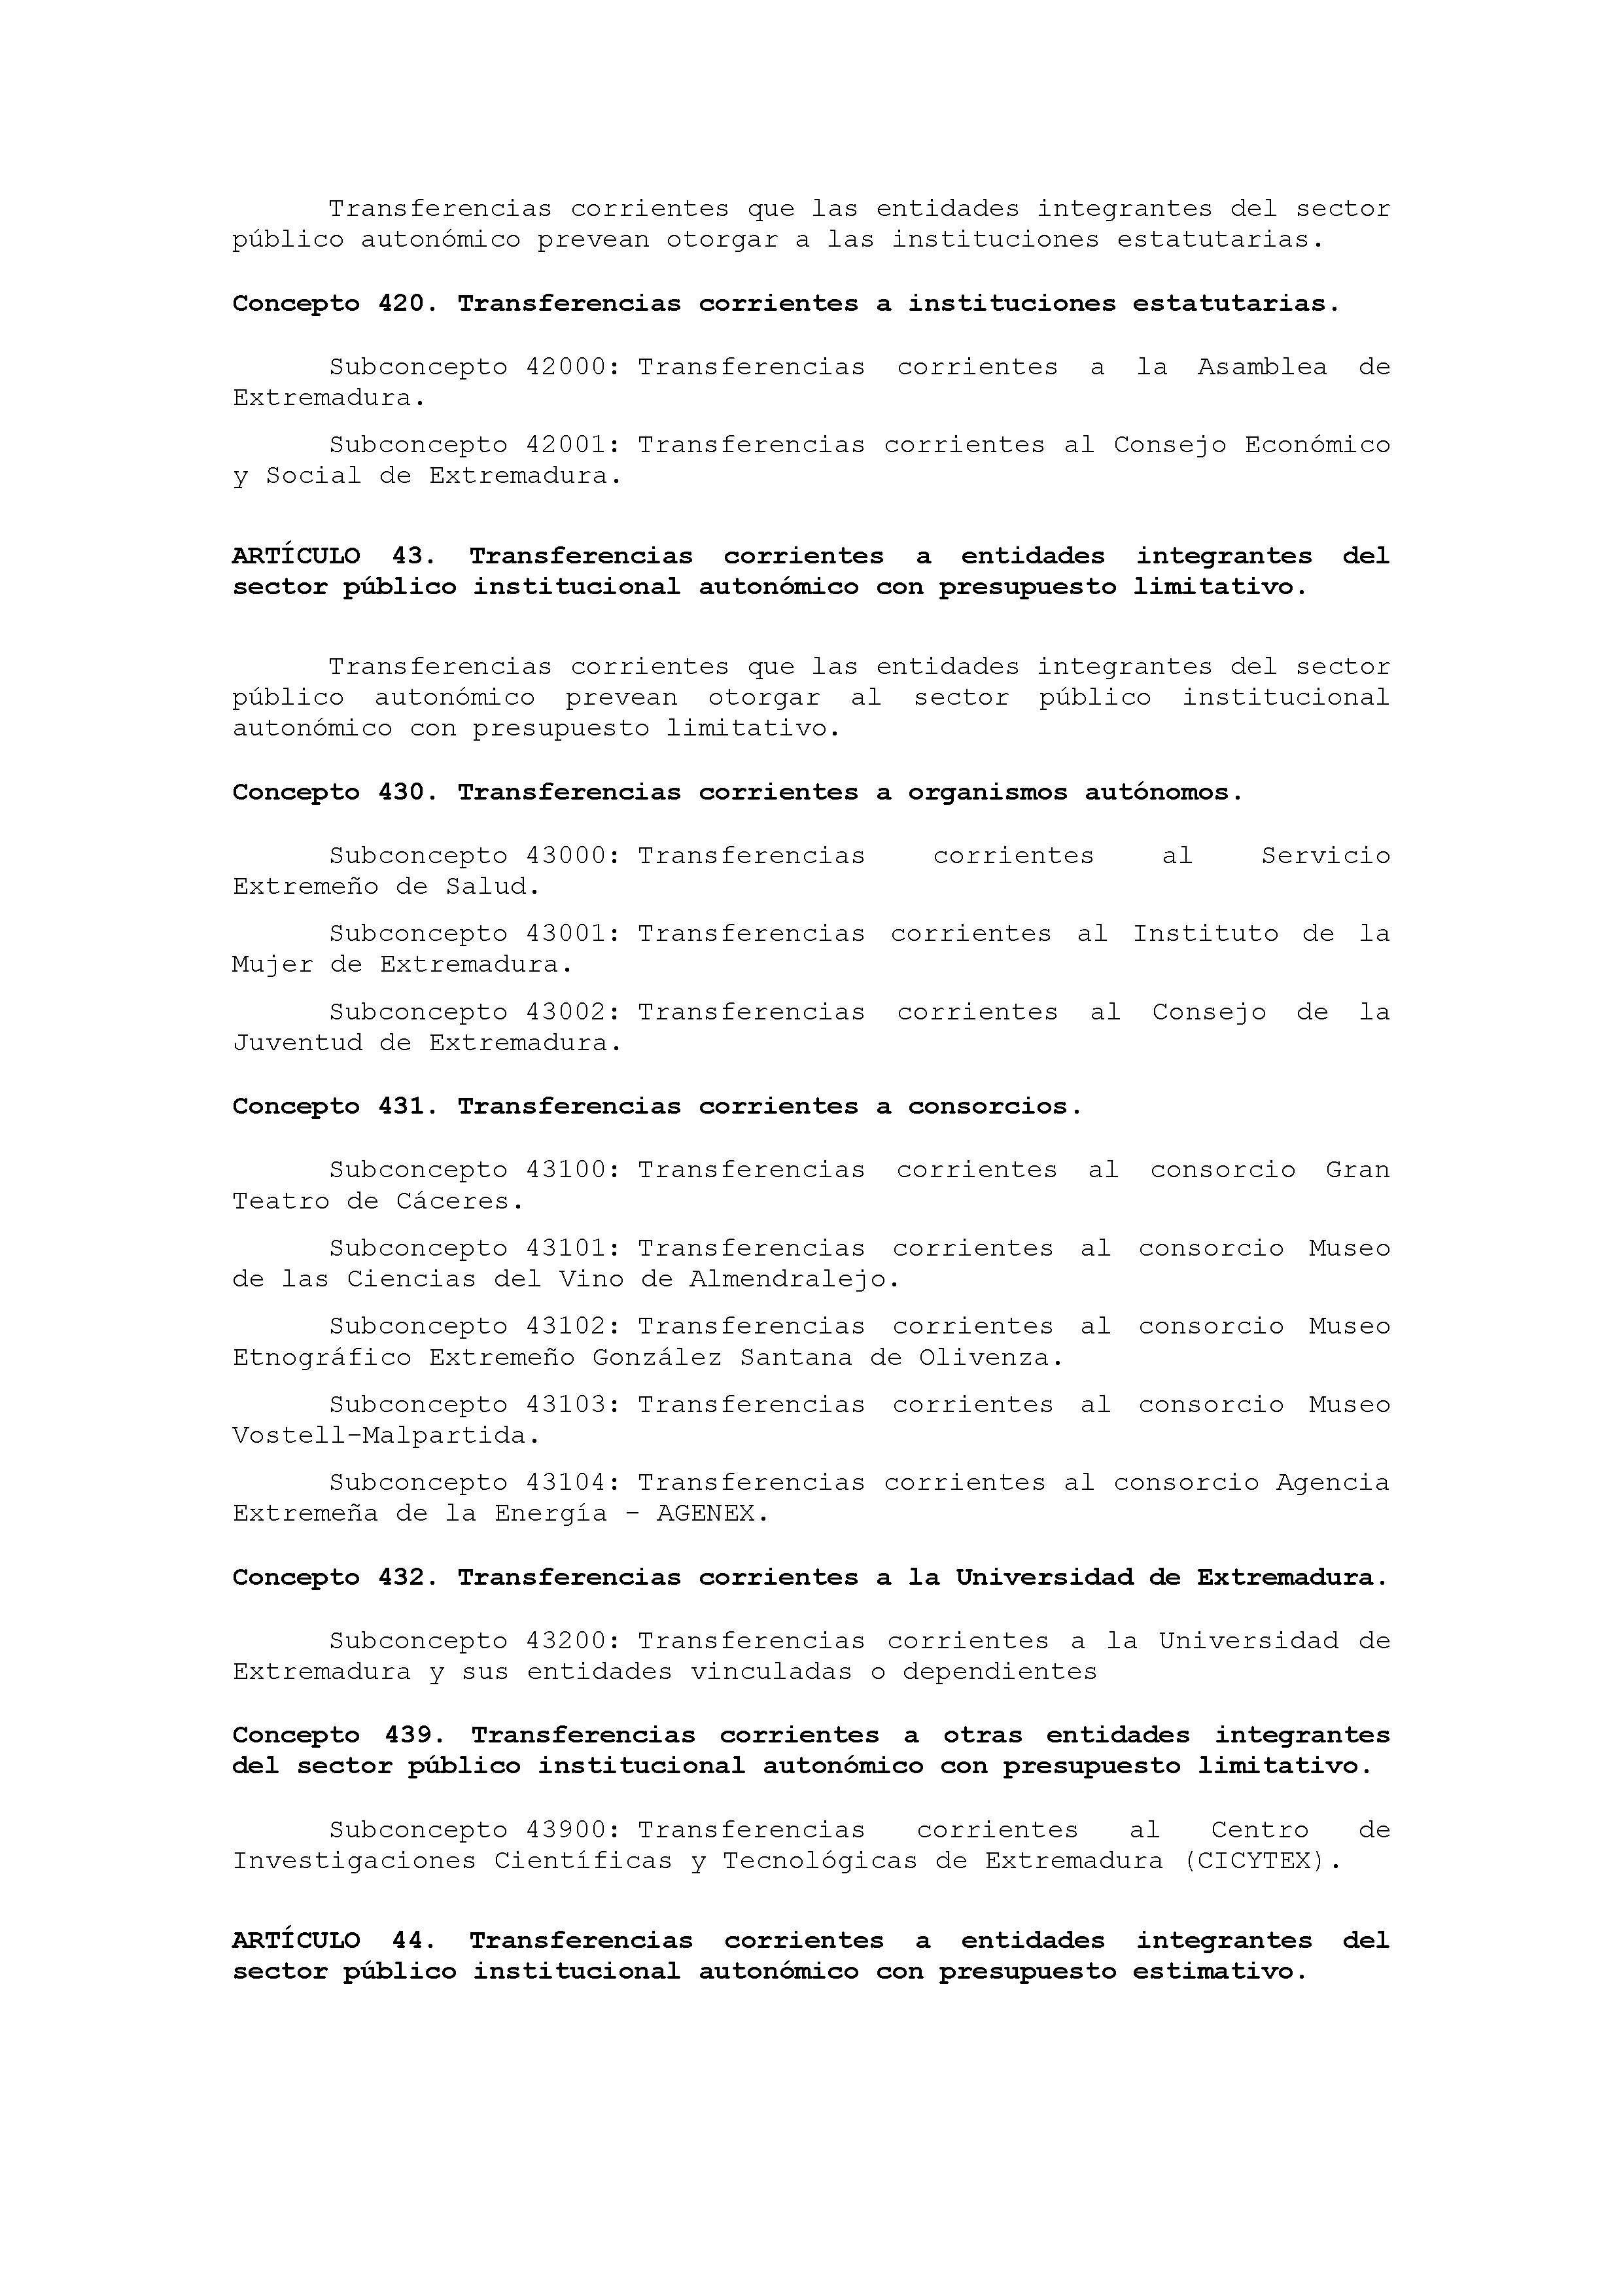 ANEXO IX CÓDIGO DE LA CLASIFICACIÓN ECONÓMICA DE LOS GASTOS PÚBLICOS Pag 32